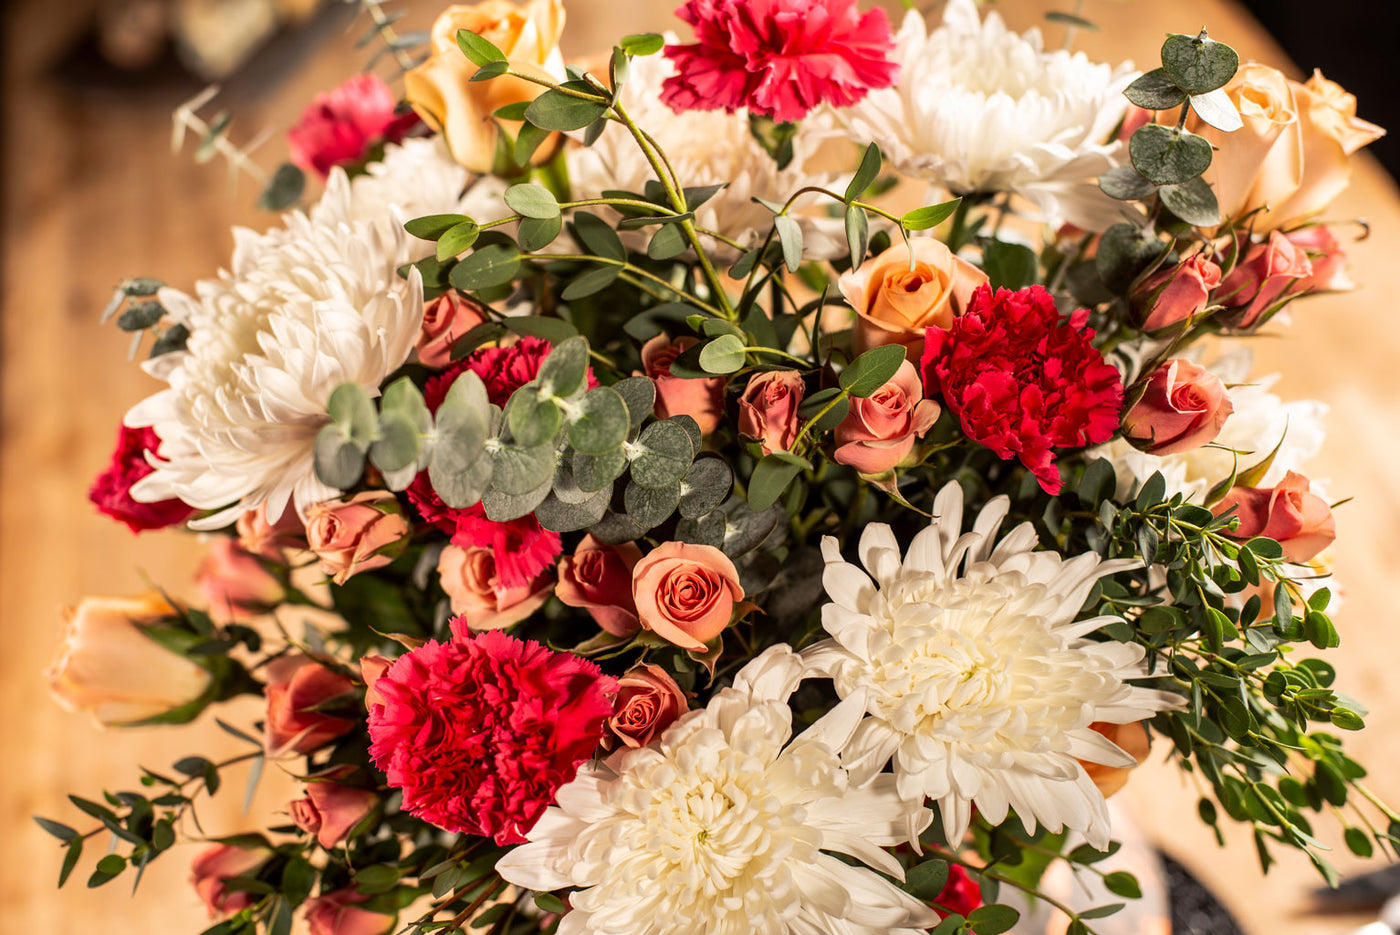 Thanksgiving flowers decoration - La Florela 